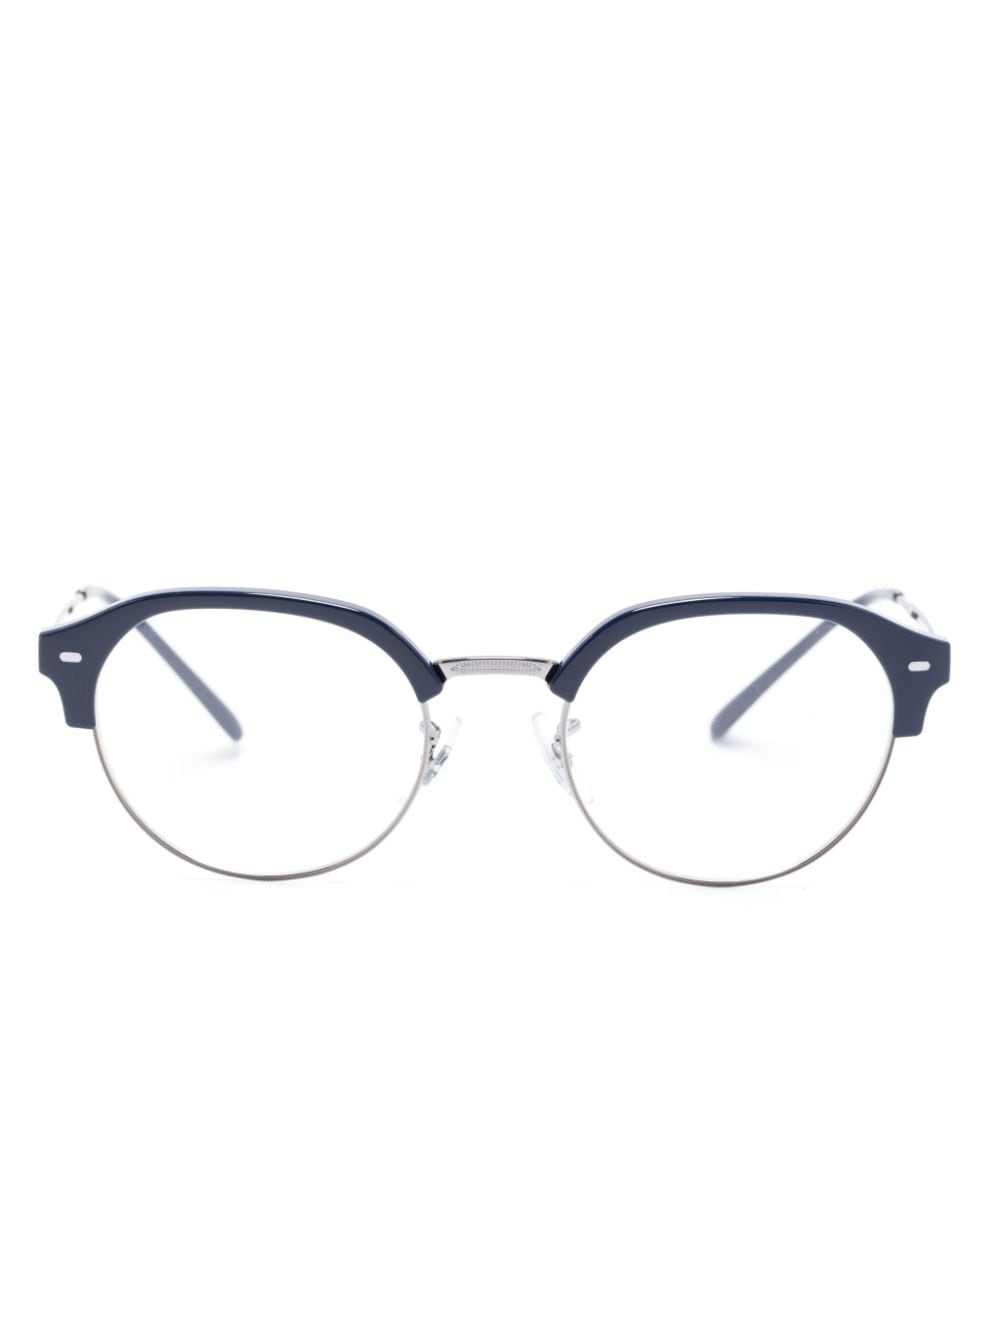 ray-ban lunettes de vue à monture demi-cerclée - bleu